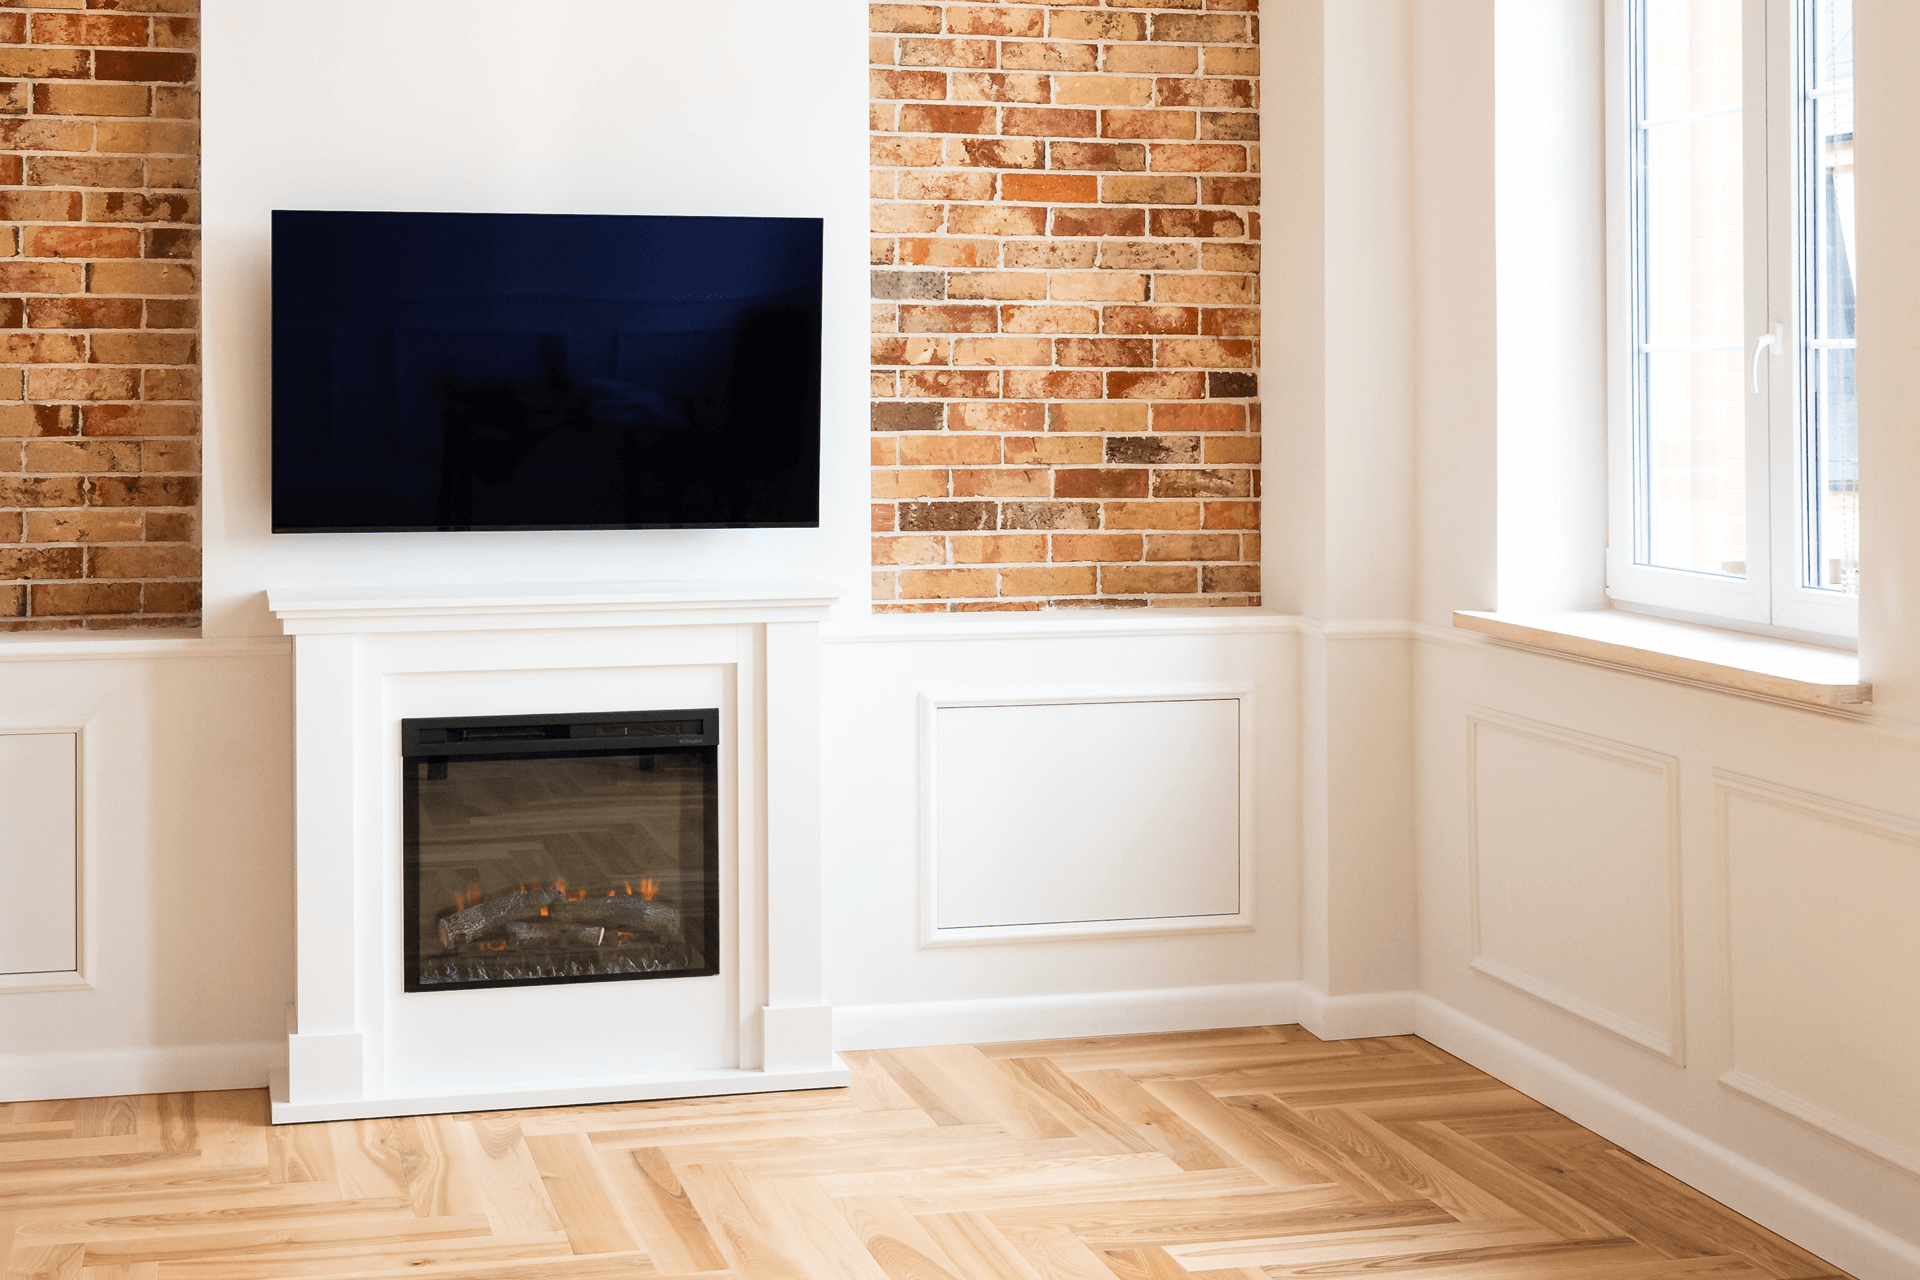 Fernsehwand in Weißt mit Kontrast zu Ziegelsteinoptik und Holzparkett